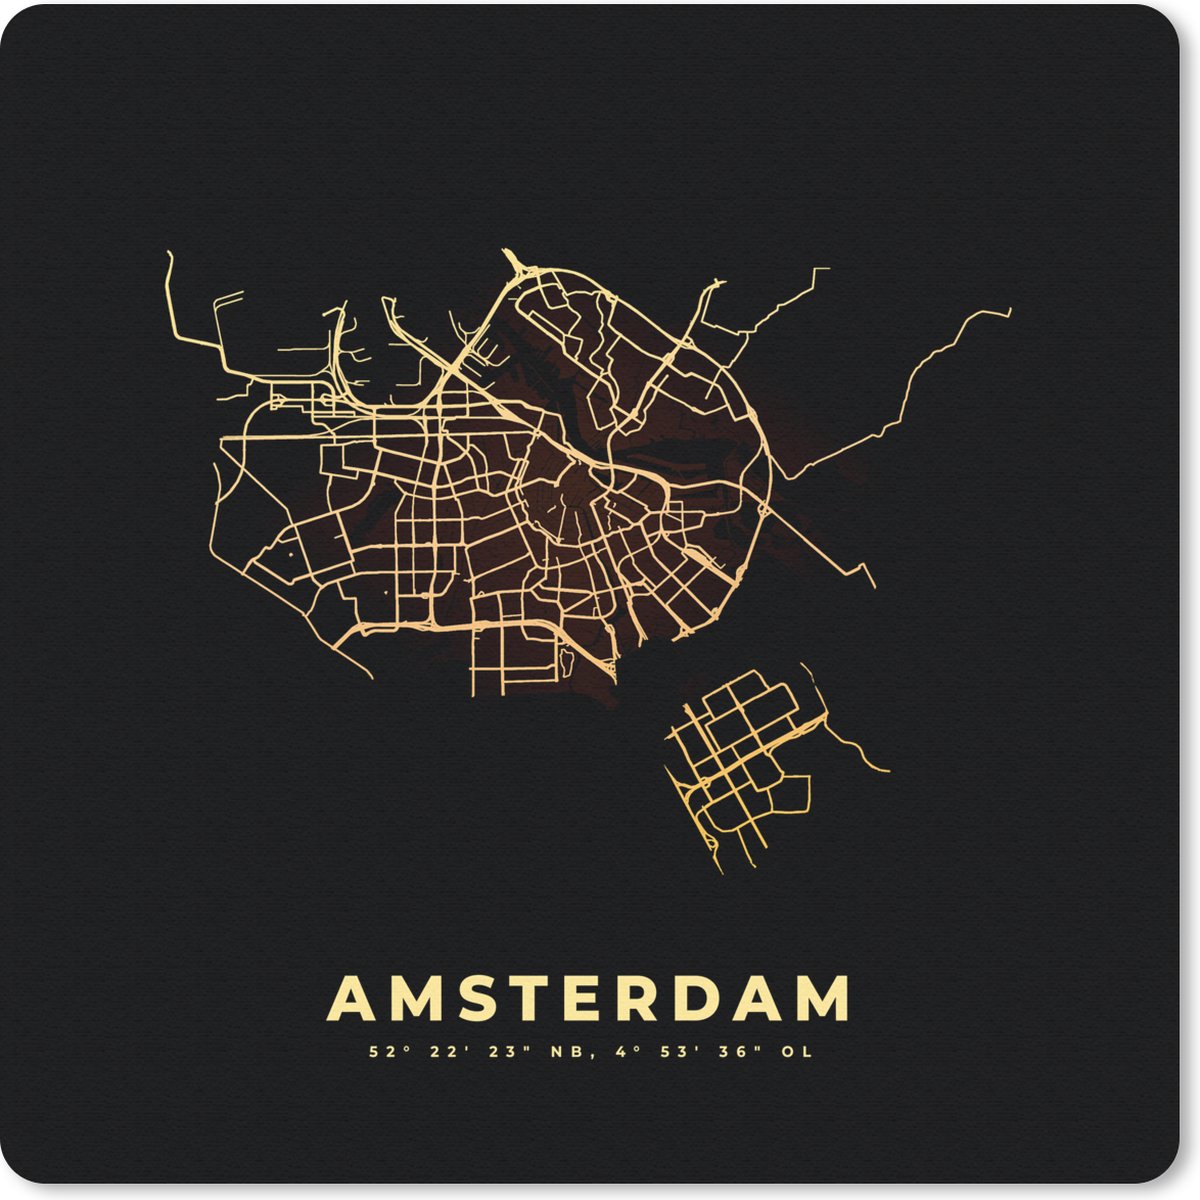 Muismat - Mousepad - Amsterdam - Plattegrond - Kaart - Stadskaart - Nederland - 30x30 cm - Muismatten